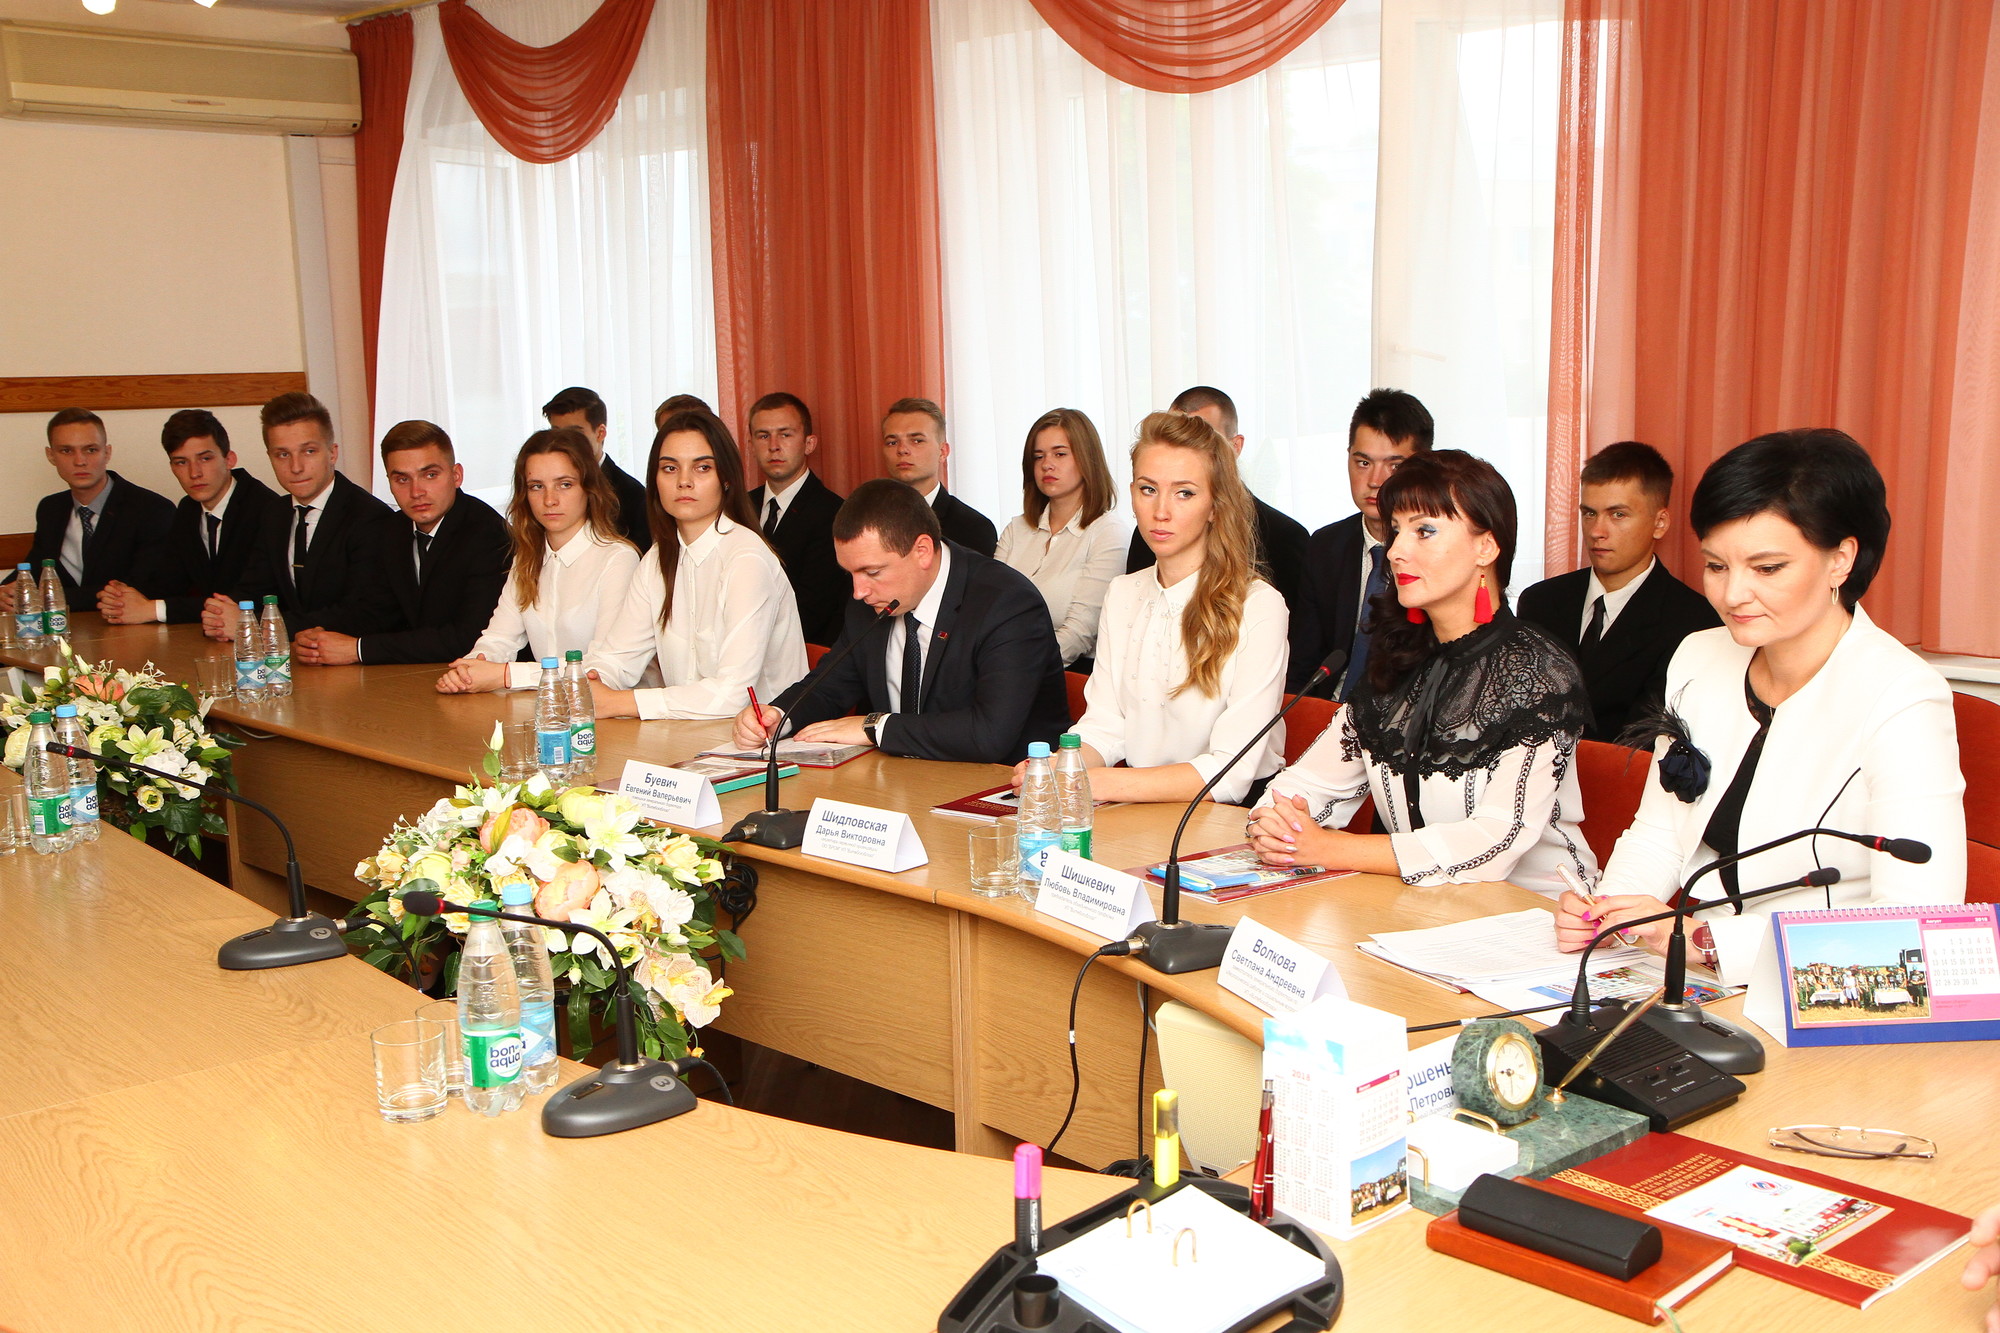 Встреча генерального директора с молодыми специалистами УП "Витебскоблгаз"